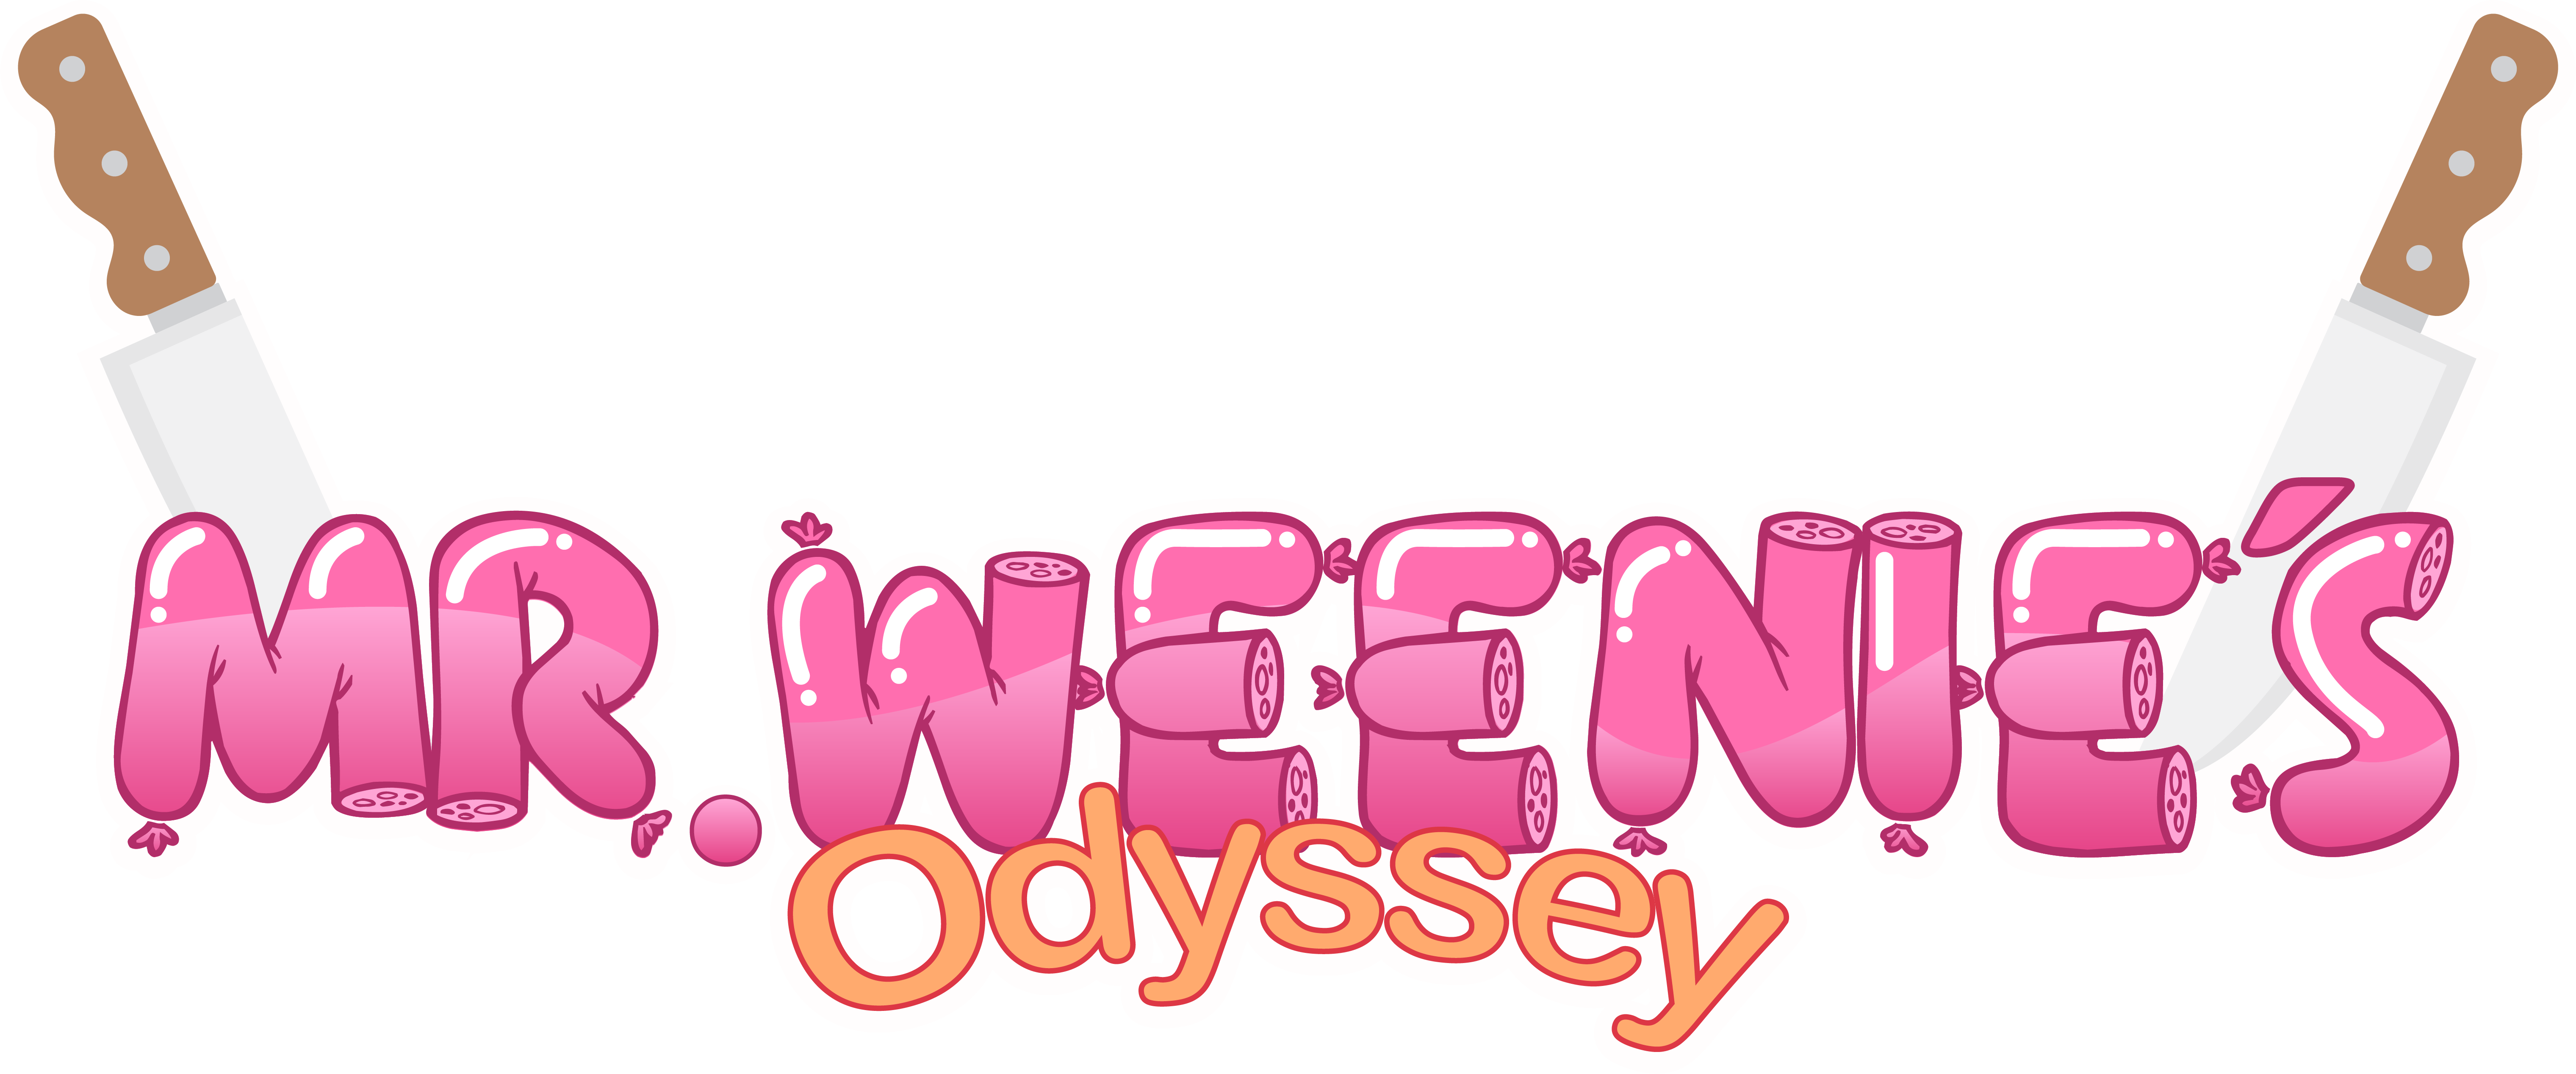 Mr. Weenie's Odyssey